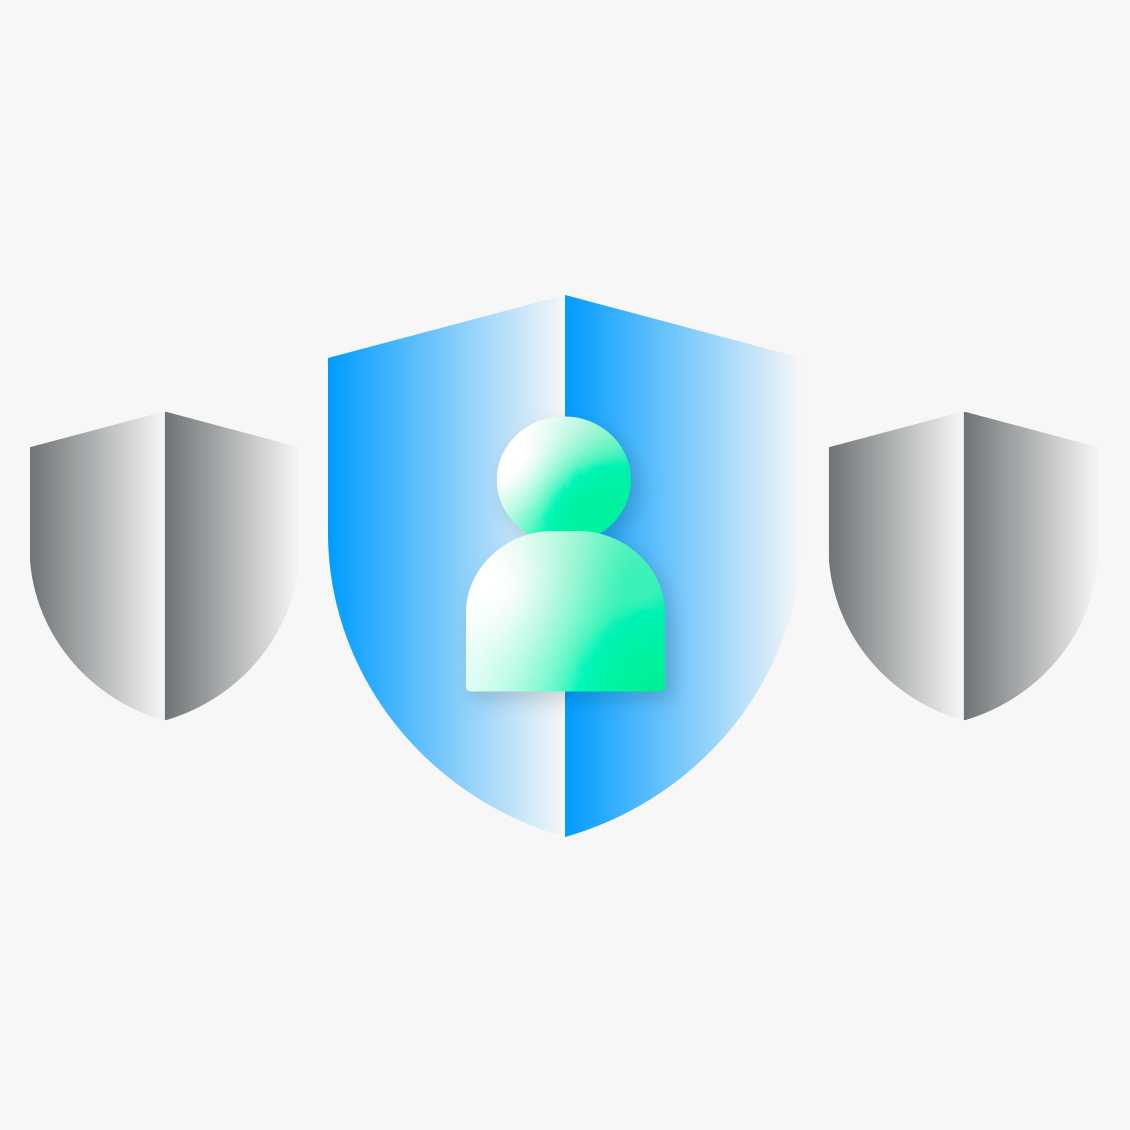 뱅크샐러드, 핀테크기업 최초 ‘마이데이터 기능적합성 심사 및 보안 취약점 점검’ 완료